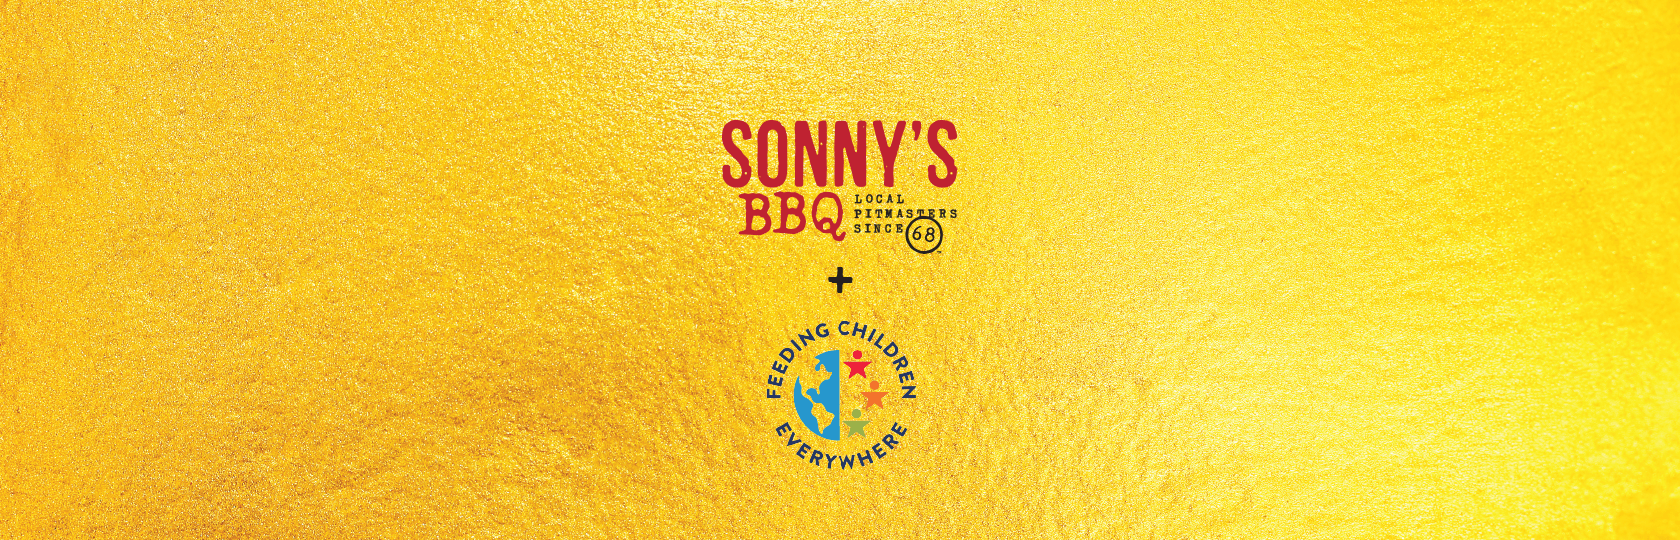 Sonny's Logo - Feeding Children Everywhere & Sonny's BBQ